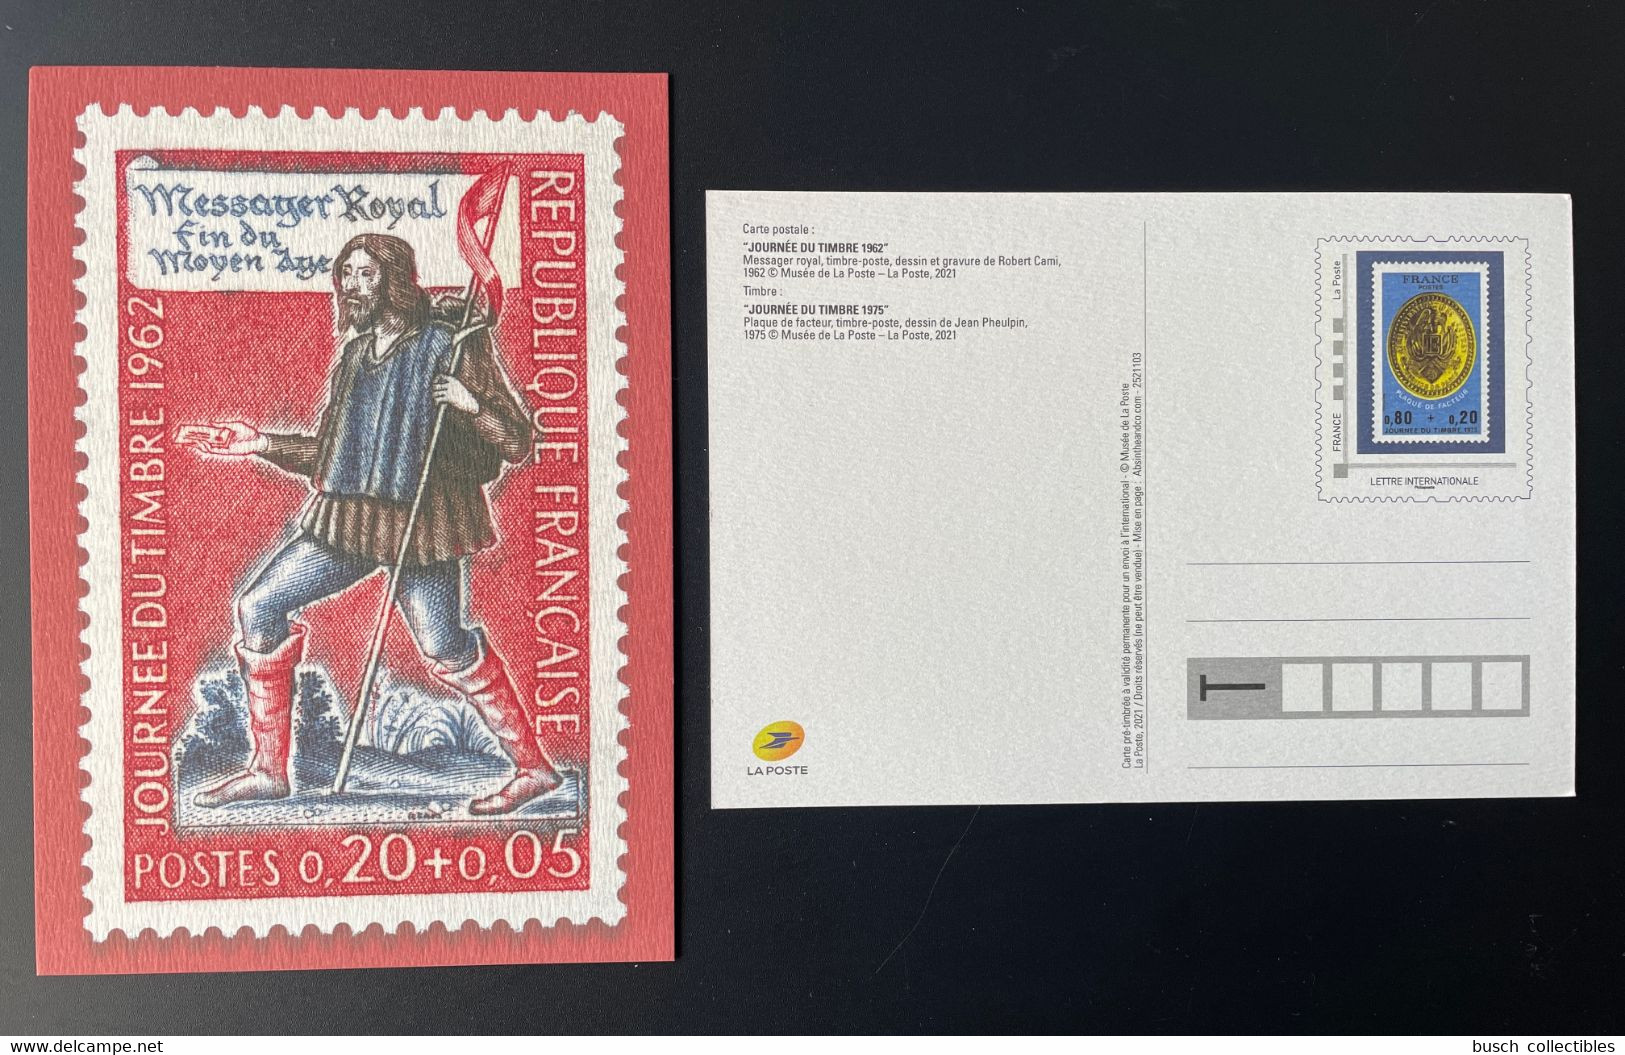 France 2021 - Carte Postale Entier Journée Du Timbre 1962 Messager Royal Fin Du Moyen Âge - Pseudo-entiers Officiels